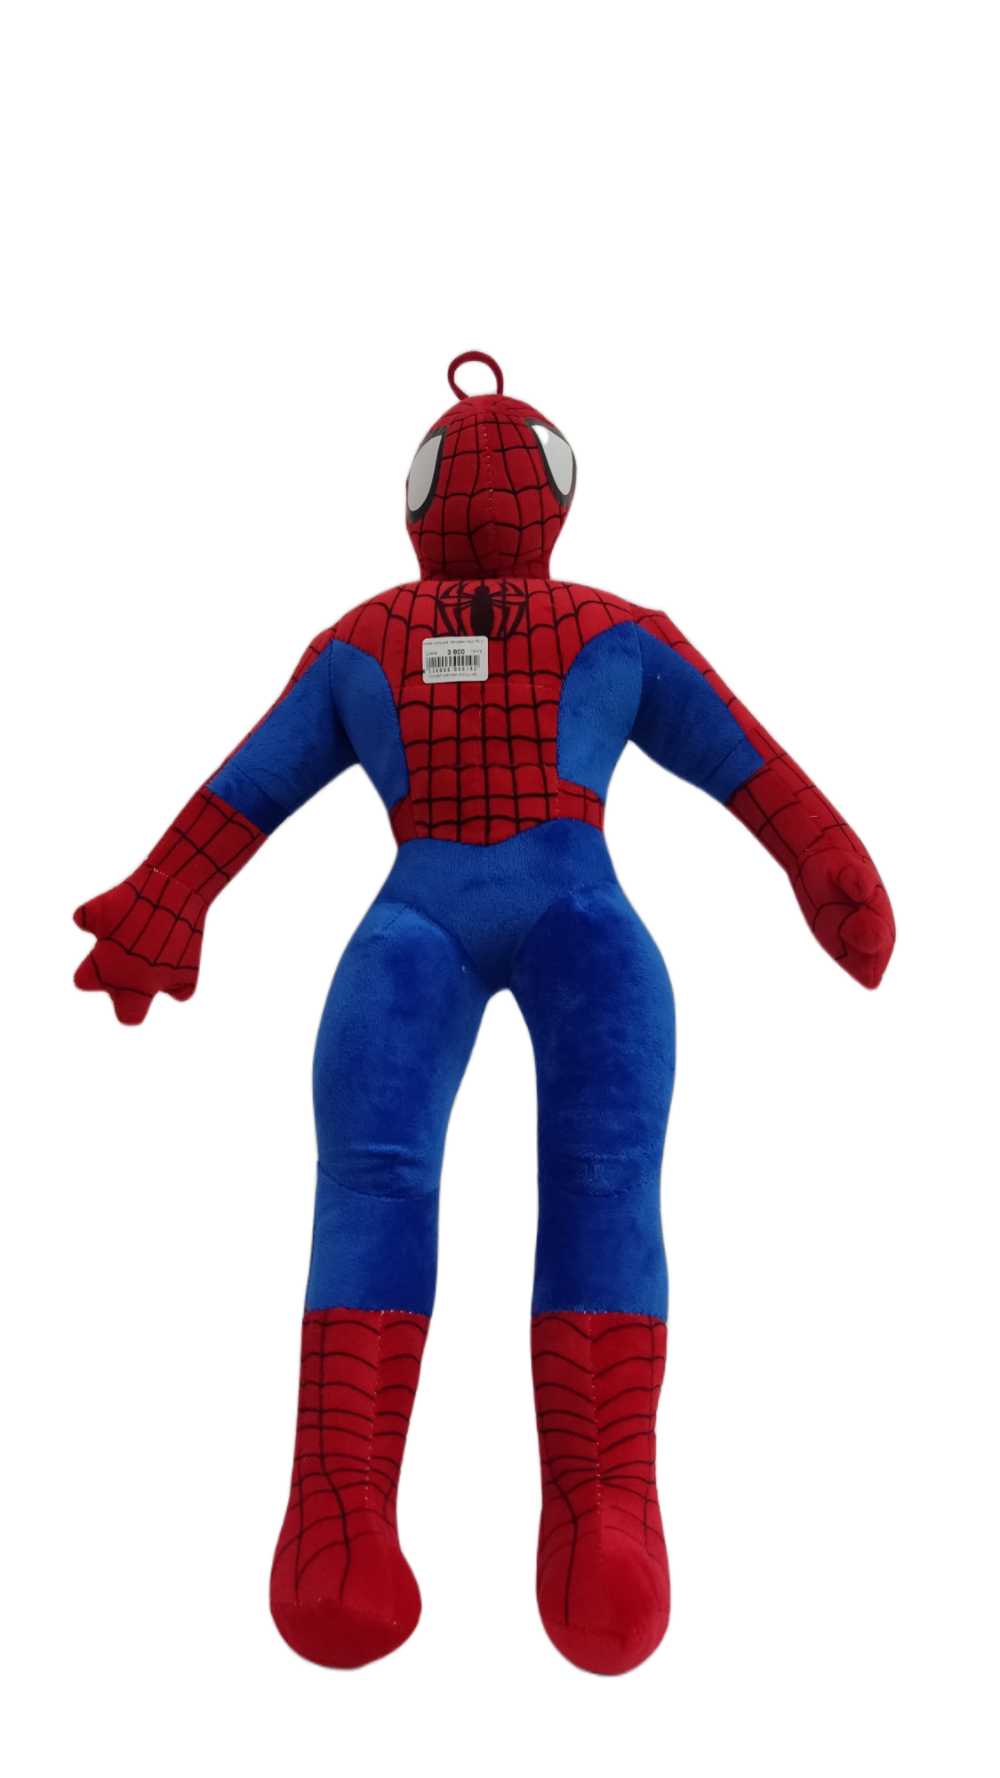 Мягкая игрушка Человек паук 45 см (Вид 1)